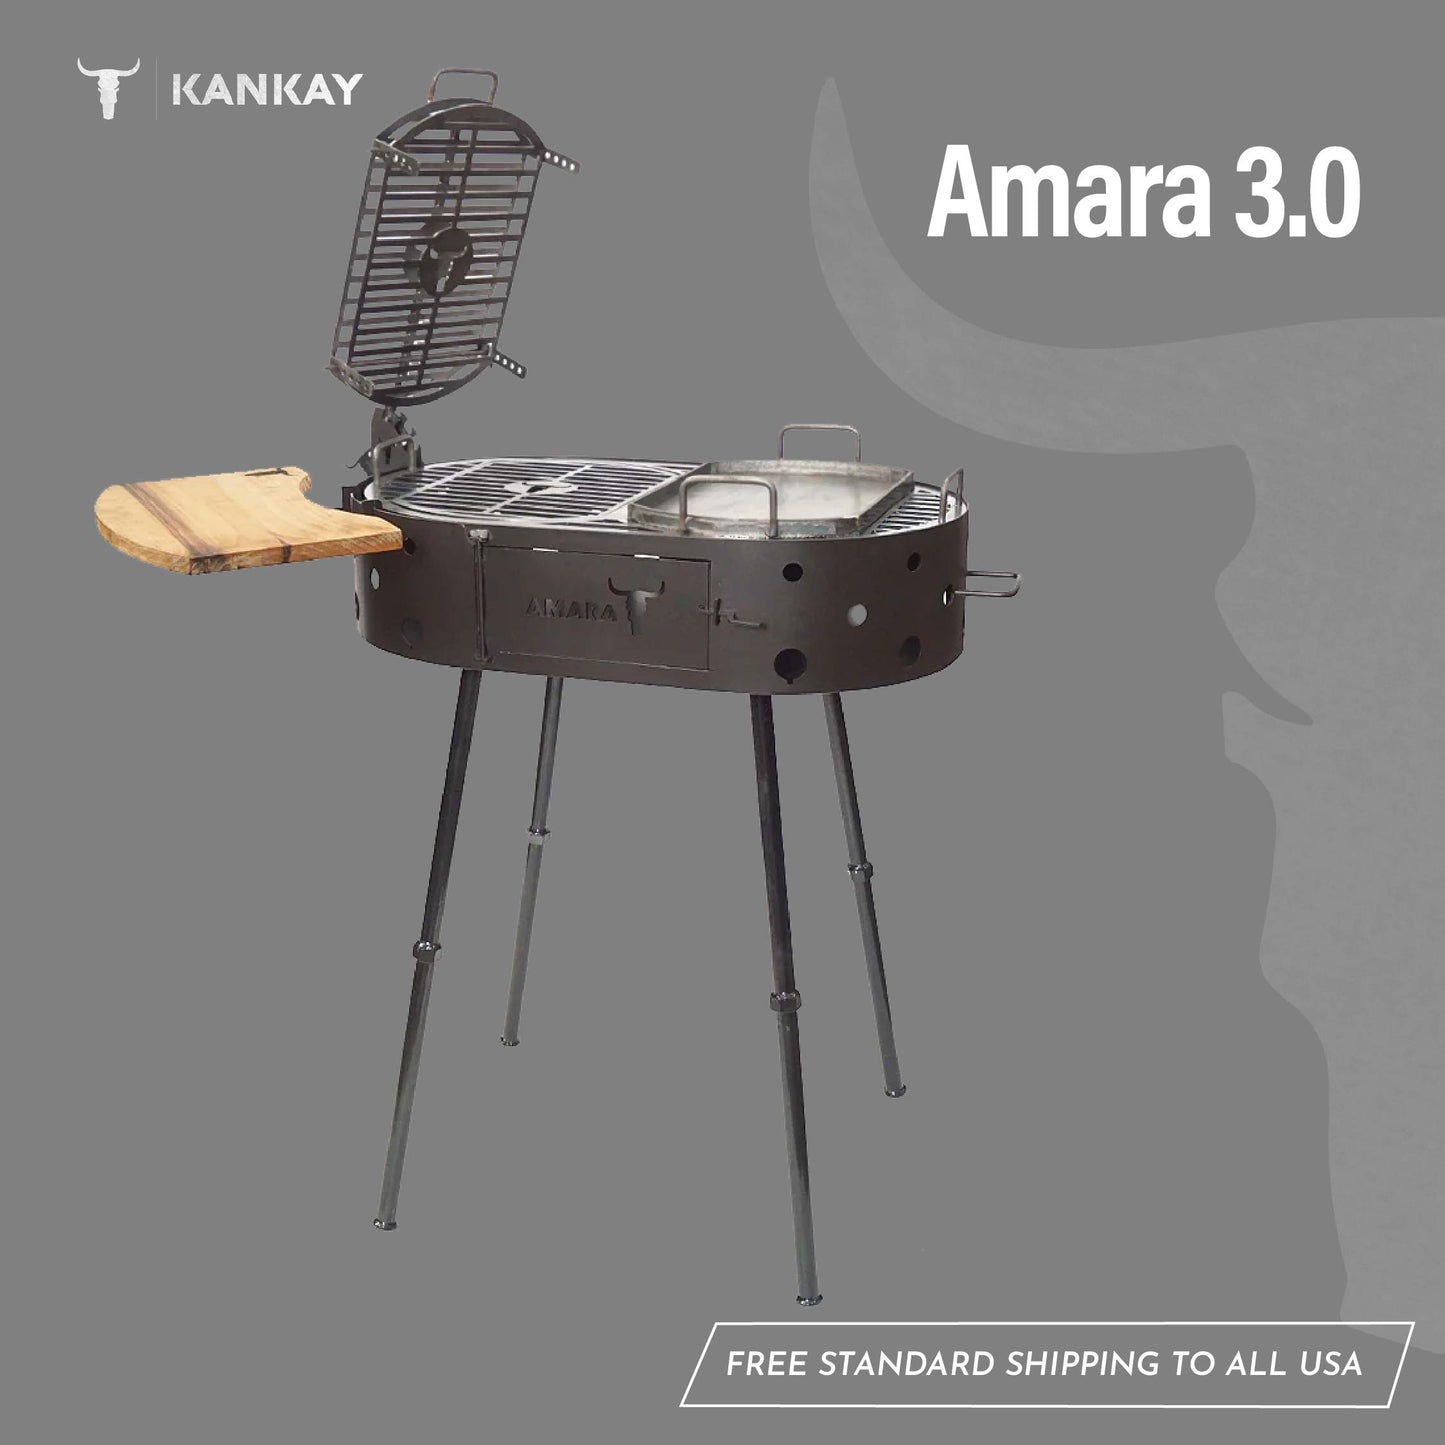 Amara 3.0